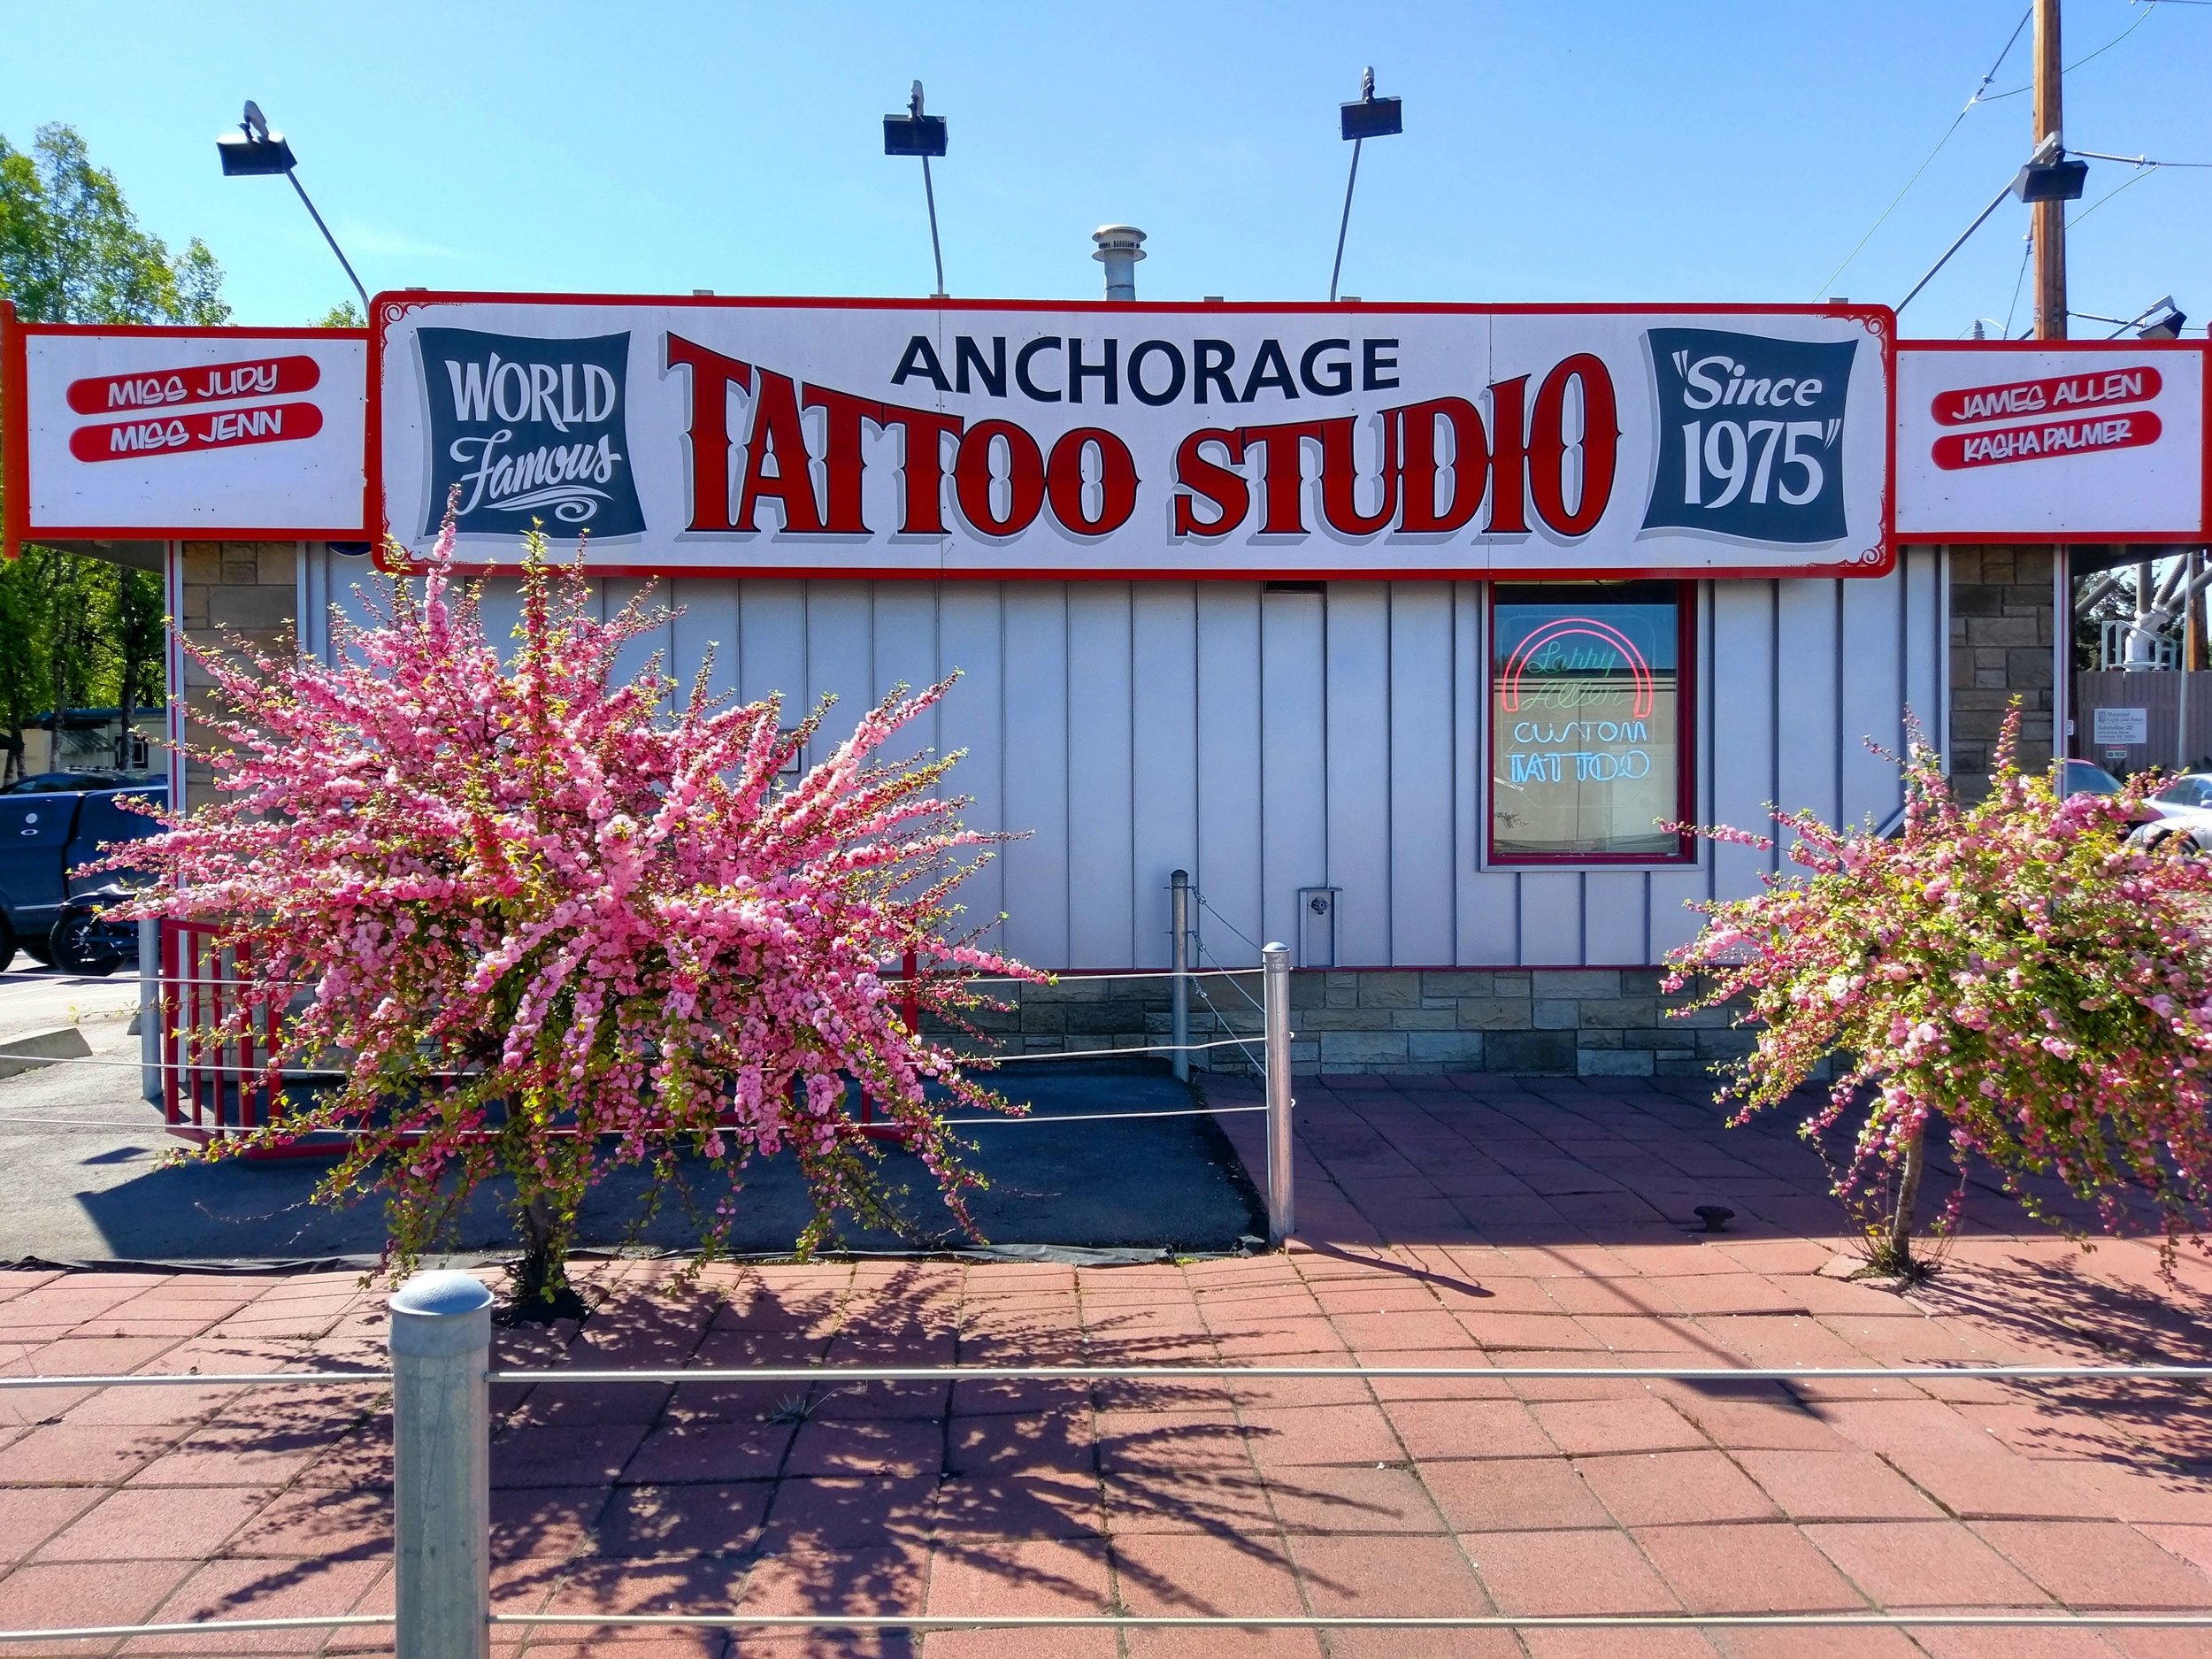 Anchorage Tattoo Studio by Larry Allen